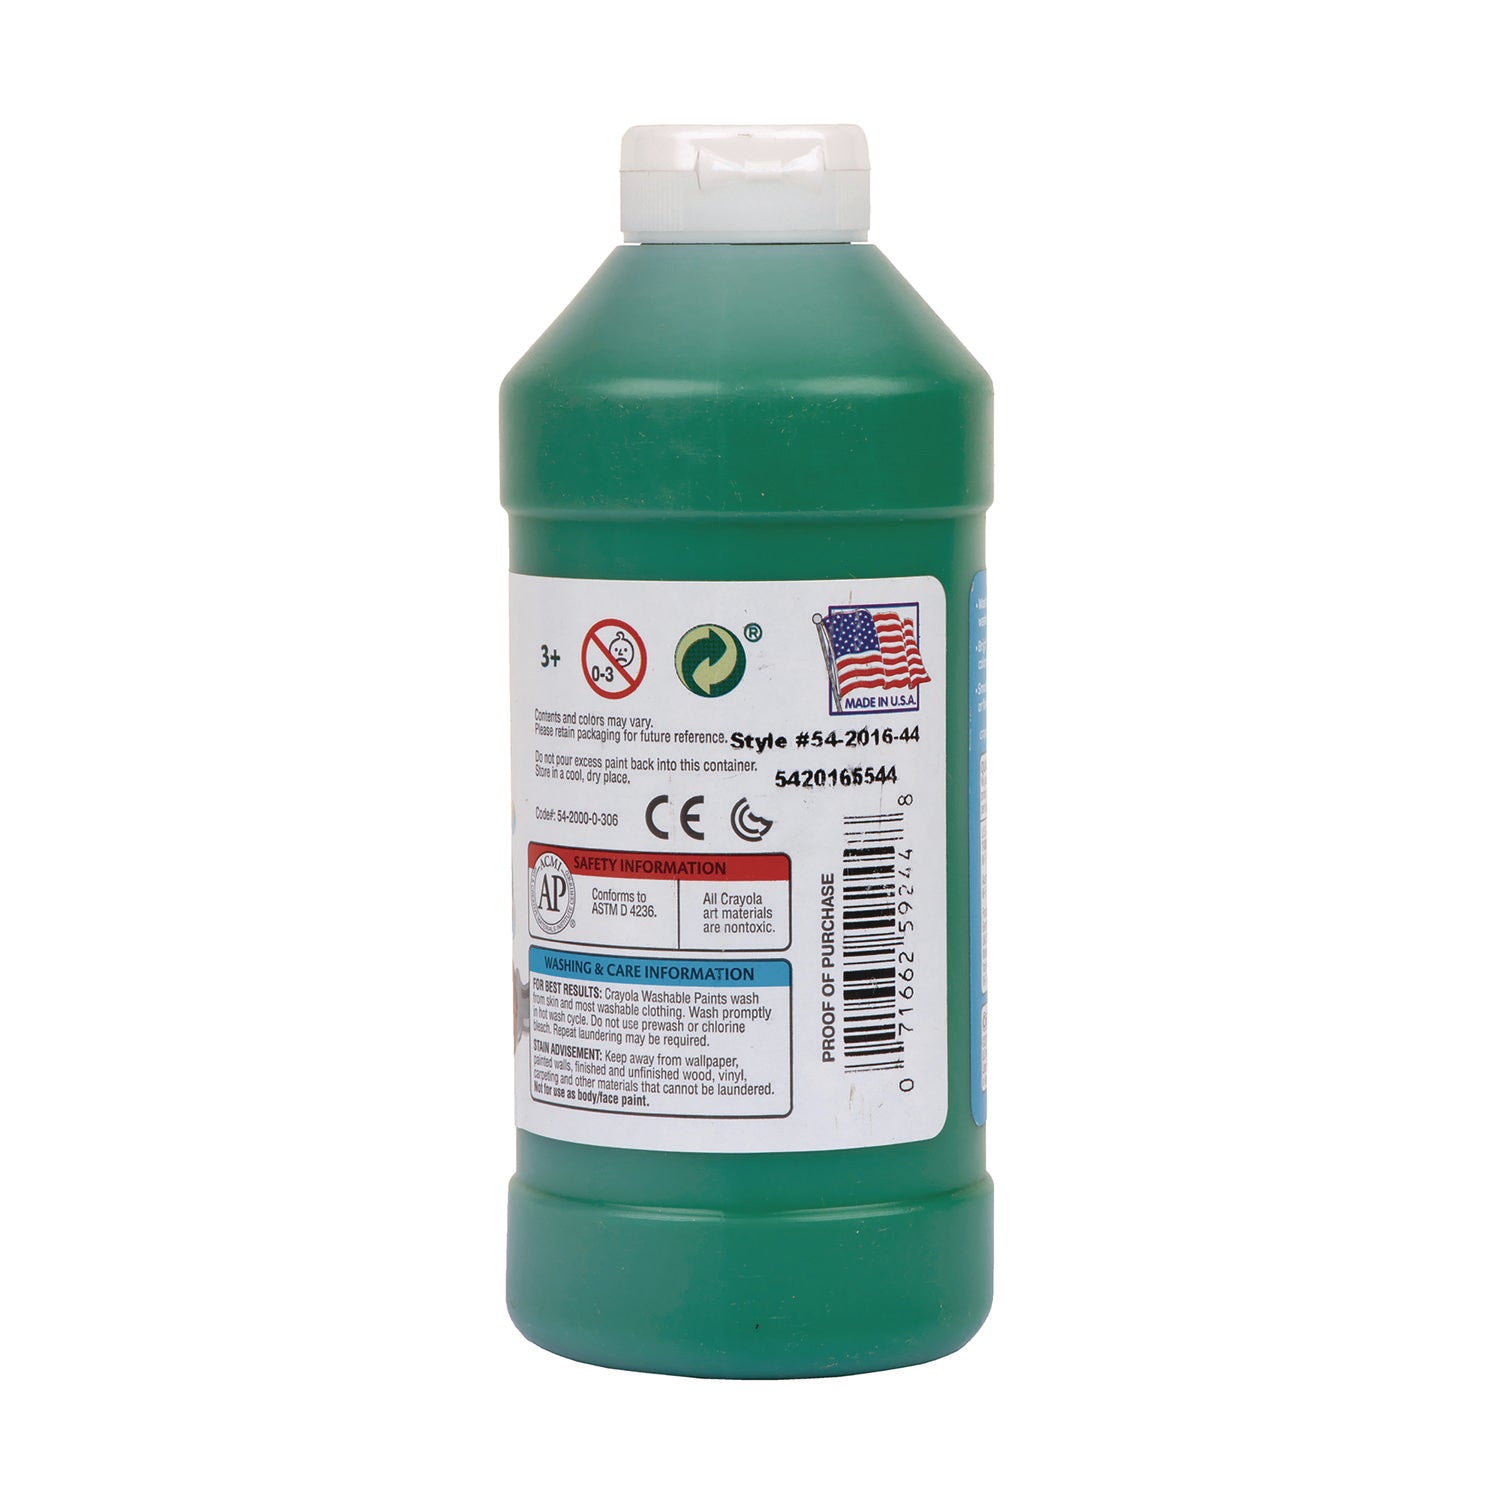 Washable Paint, Green, 16 oz Bottle - 